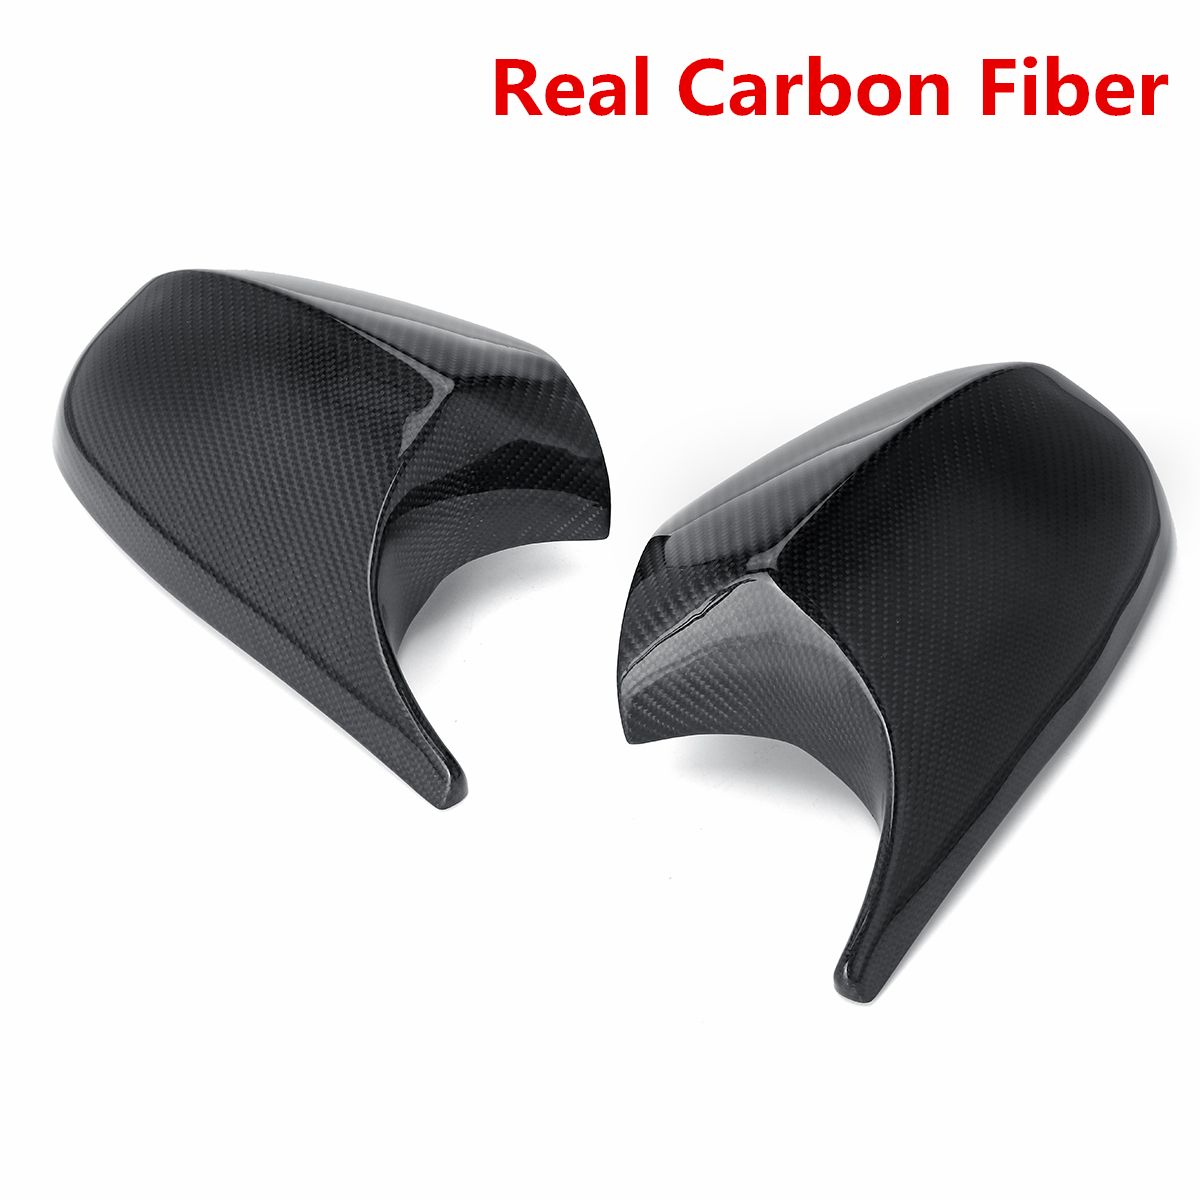 2Pcs-Car-M3-Sytle-Real-Carbon-Fiber-Rear-View-Mirror-Caps-Covers-For-BMW-E90-E91-2008-2011-E92-E93-2-1662711